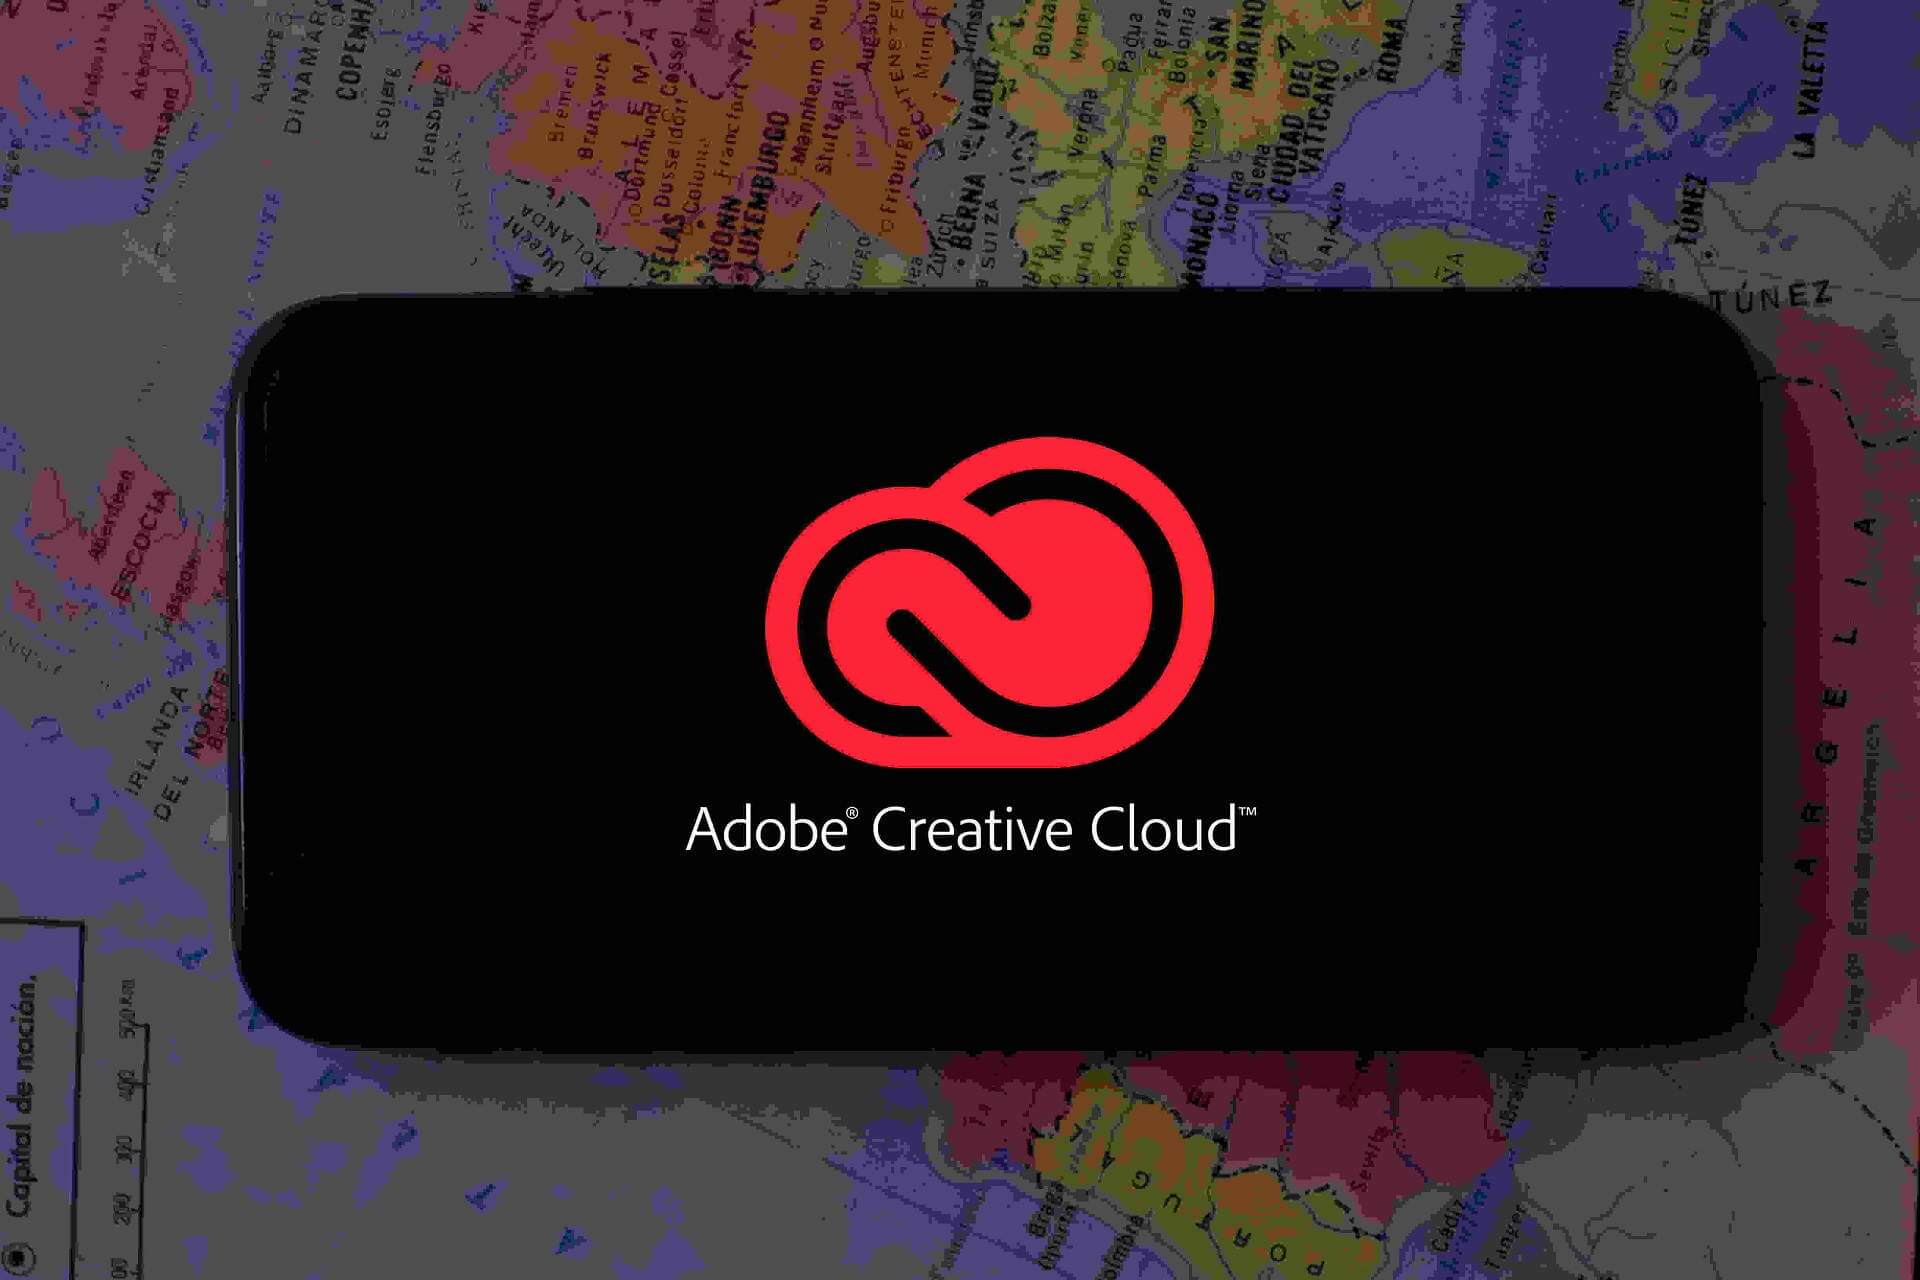 Adobe Creative Cloud tømmer batteriet for fort